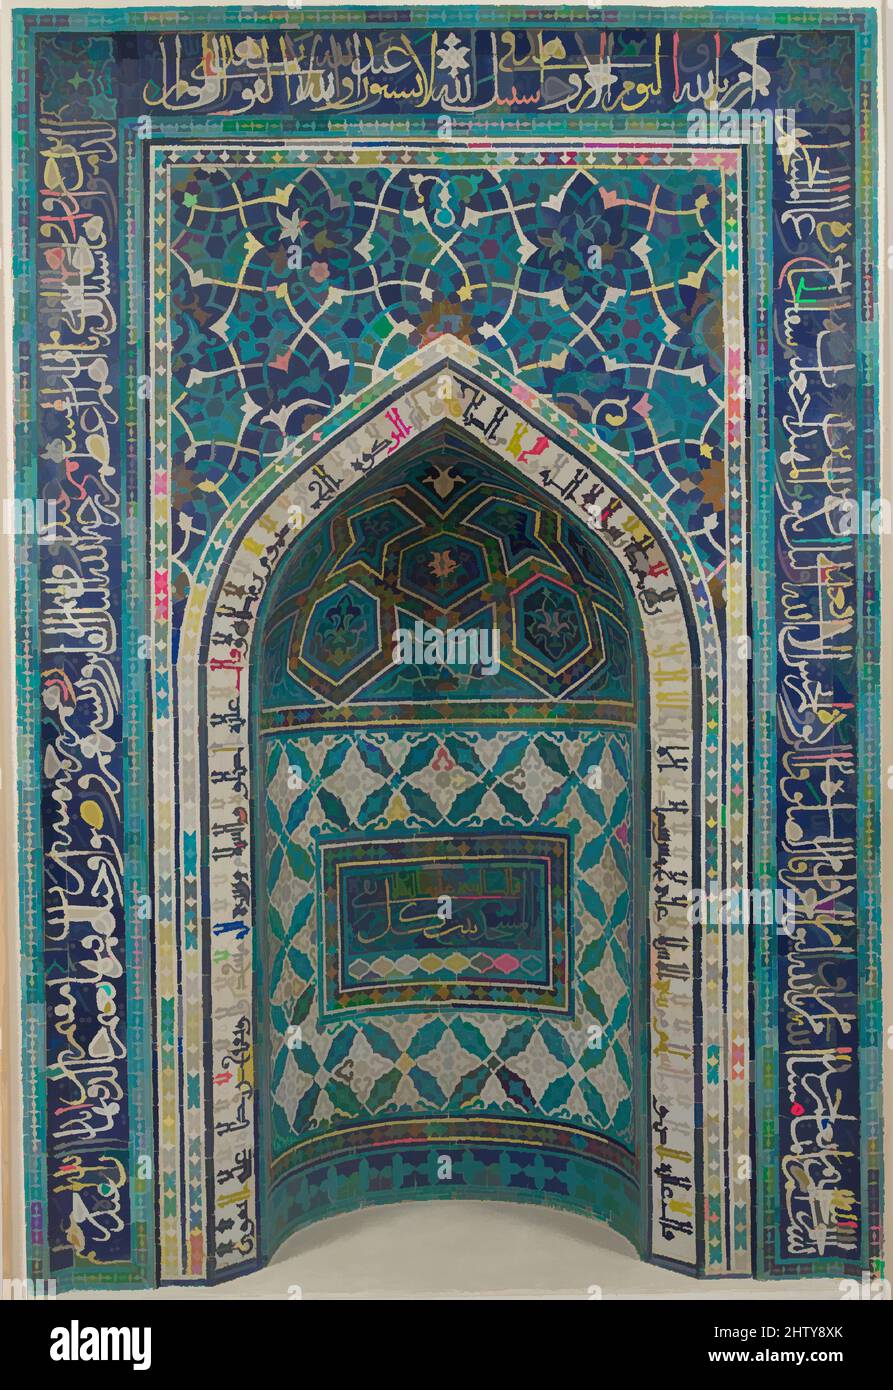 Arte ispirata da Mihrab (Niche di preghiera), A.H. 755/A.D. 1354–55, dall'Iran, Isfahan, Mosaico di piastrelle tagliate policromate su corpo di stonepaste; messa in mortaio, 135 1/16 x 113 11/16in. (343,1 x 288,7cm), Ceramica, Iscrizione Araba (sul bordo esterno in thuluth script) Corano 9:18-22, opere classiche modernizzate da Artotop con un tuffo di modernità. Forme, colore e valore, impatto visivo accattivante sulle emozioni artistiche attraverso la libertà delle opere d'arte in modo contemporaneo. Un messaggio senza tempo che persegue una nuova direzione selvaggiamente creativa. Artisti che si rivolgono al supporto digitale e creano l'NFT Artotop Foto Stock